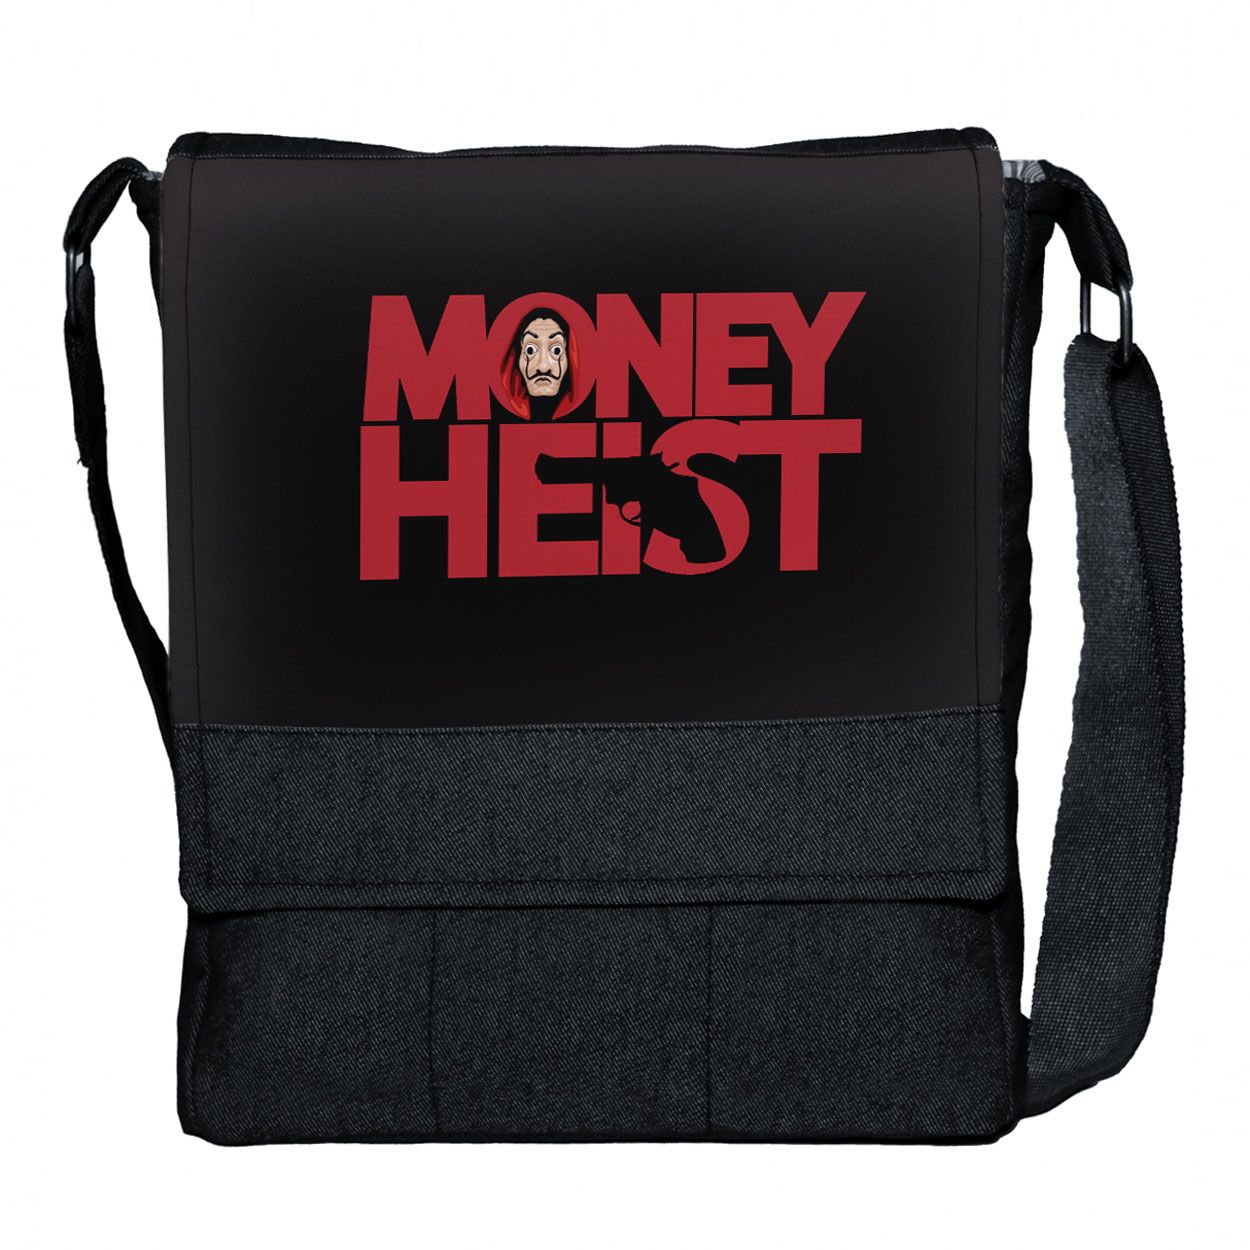 کیف رودوشی چی چاپ طرح سریال Money heist کد 65610 -  - 1